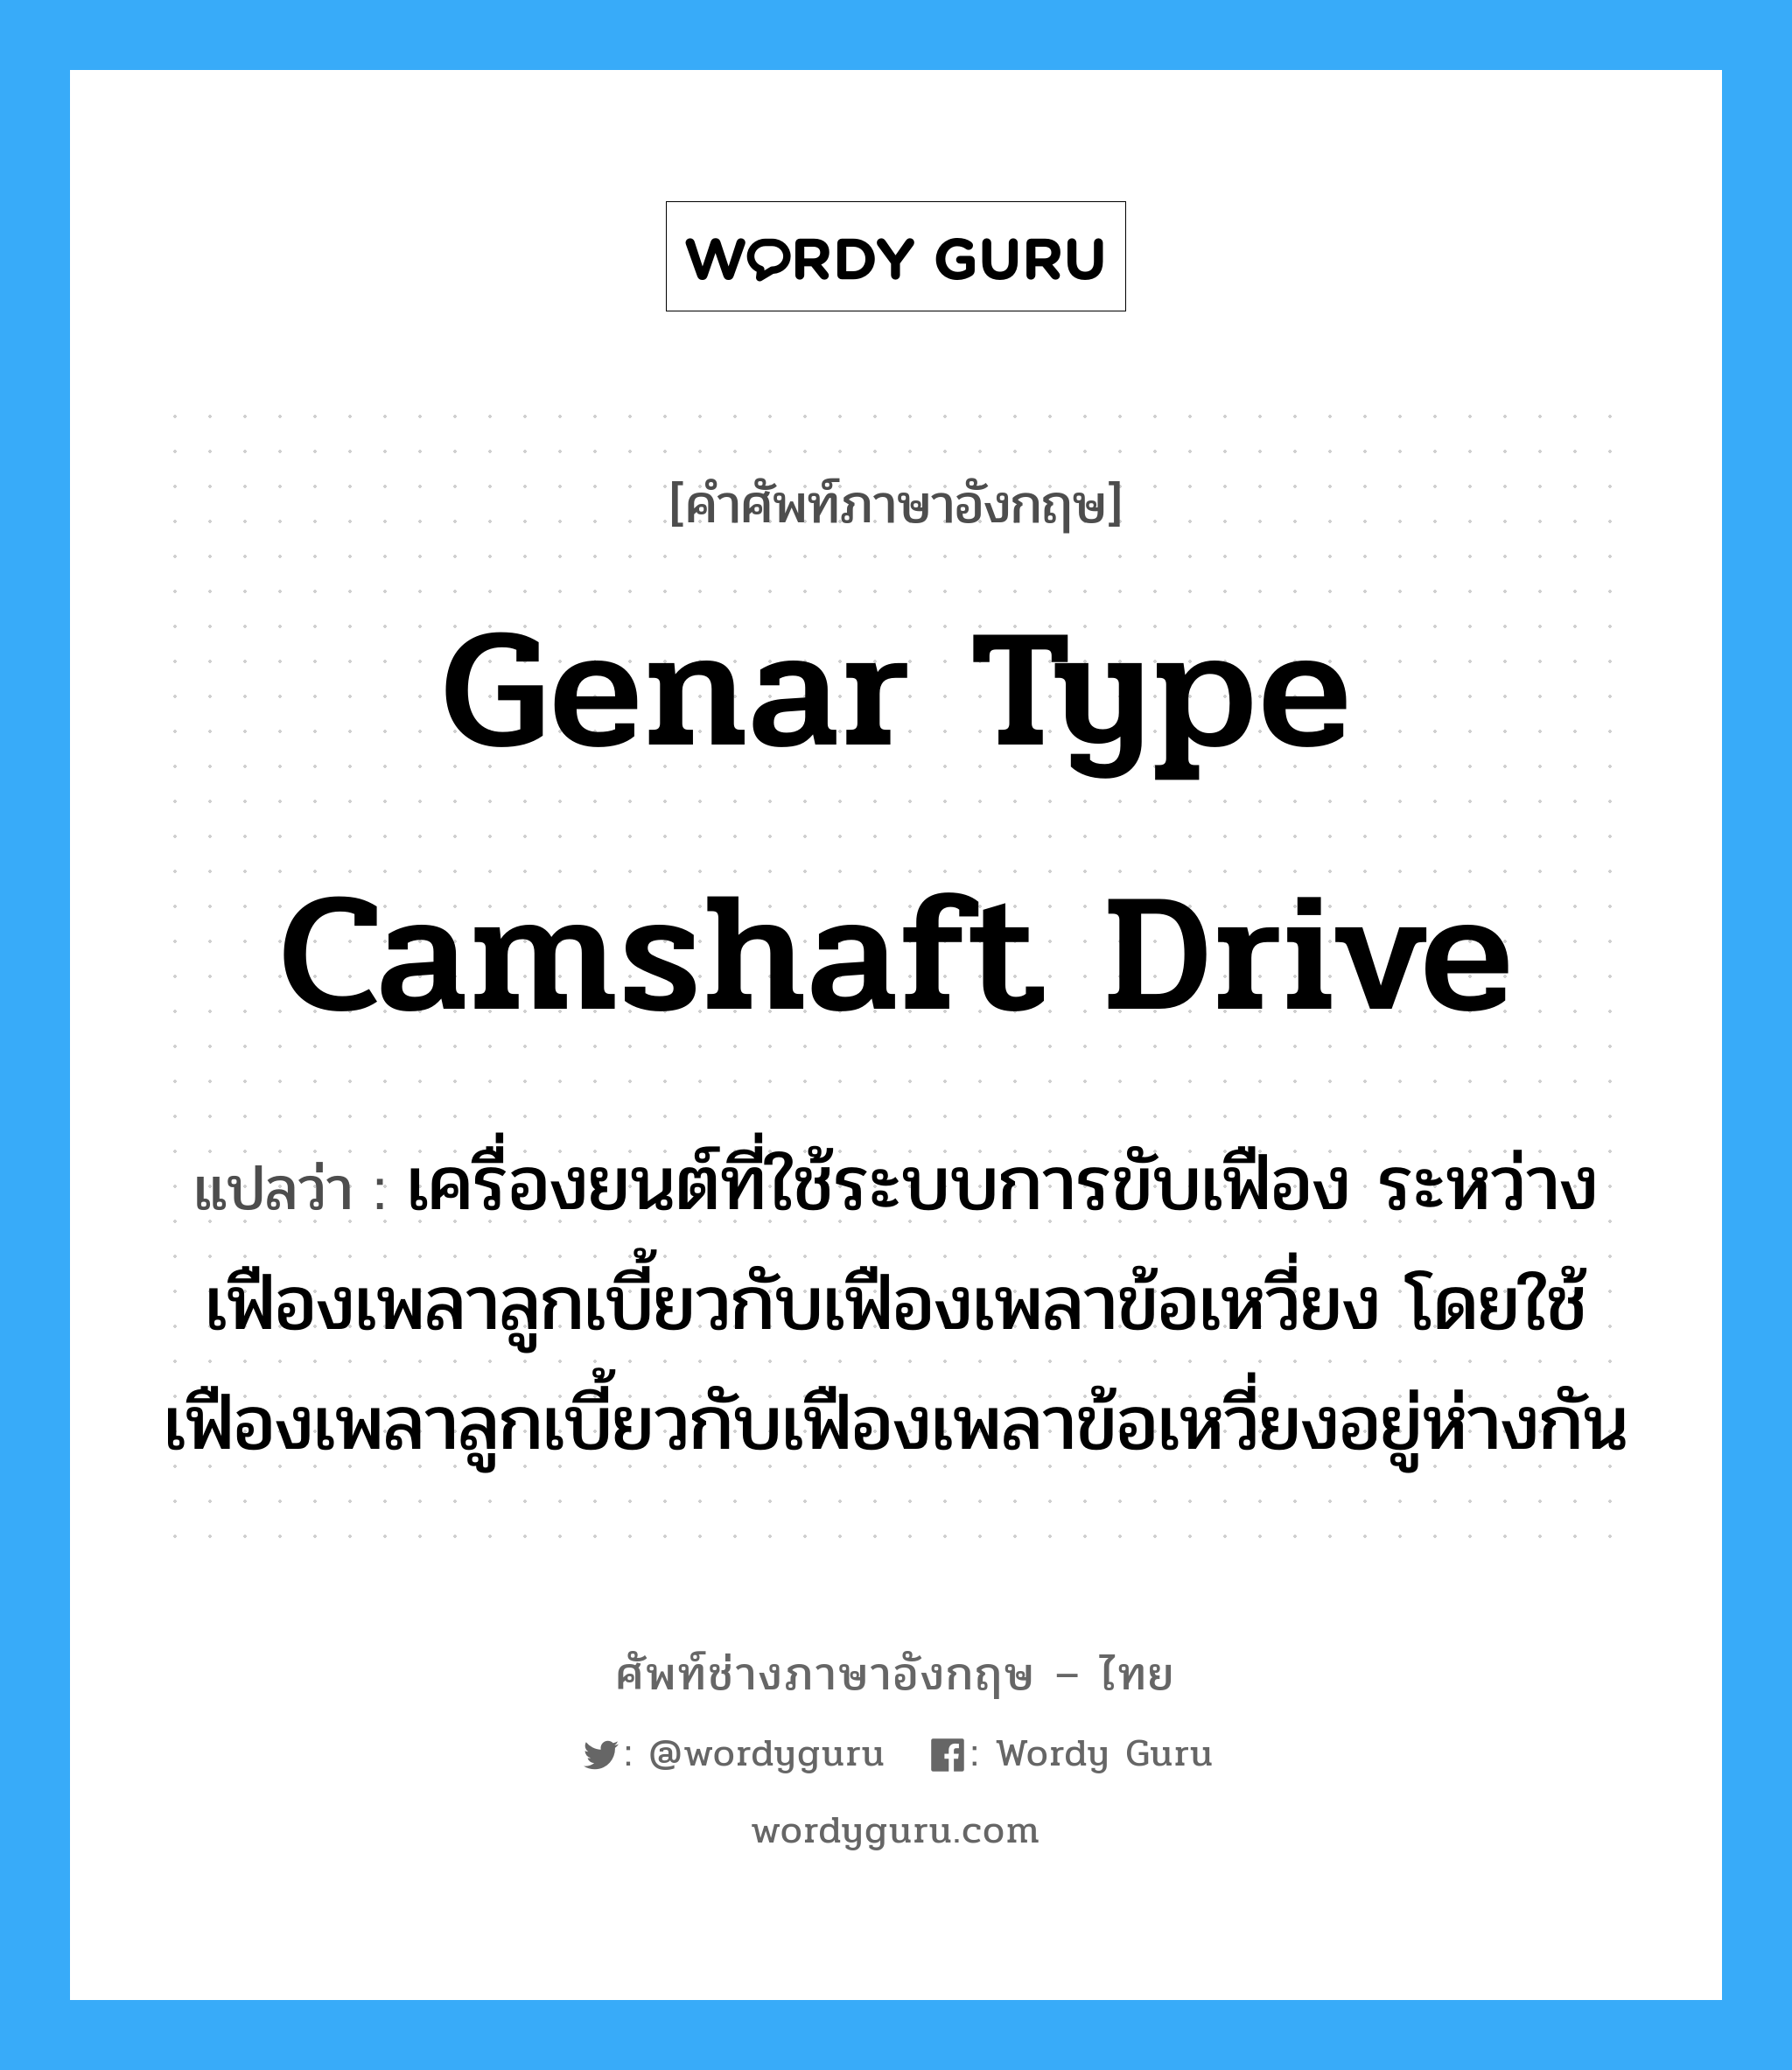 genar type camshaft drive แปลว่า?, คำศัพท์ช่างภาษาอังกฤษ - ไทย genar type camshaft drive คำศัพท์ภาษาอังกฤษ genar type camshaft drive แปลว่า เครื่องยนต์ที่ใช้ระบบการขับเฟือง ระหว่างเฟืองเพลาลูกเบี้ยวกับเฟืองเพลาข้อเหวี่ยง โดยใช้เฟืองเพลาลูกเบี้ยวกับเฟืองเพลาข้อเหวี่ยงอยู่ห่างกัน